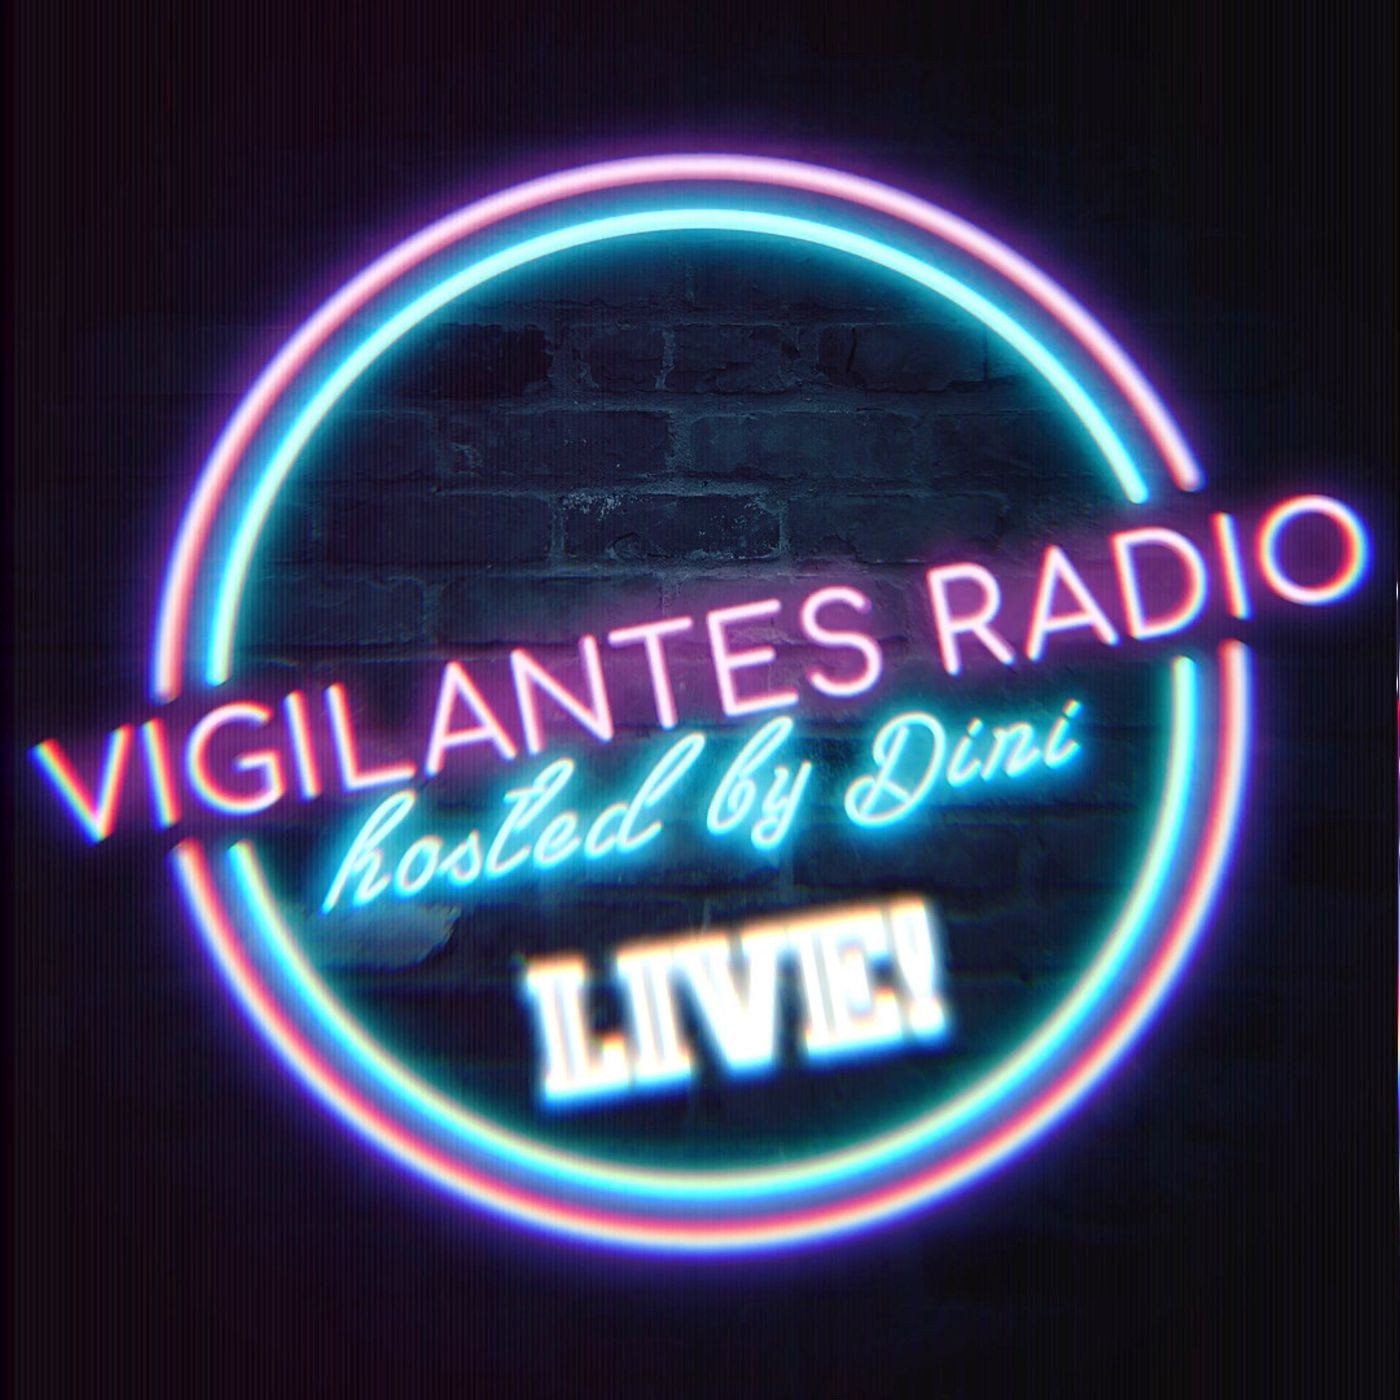 Vigilantes Radio Live! Album Art